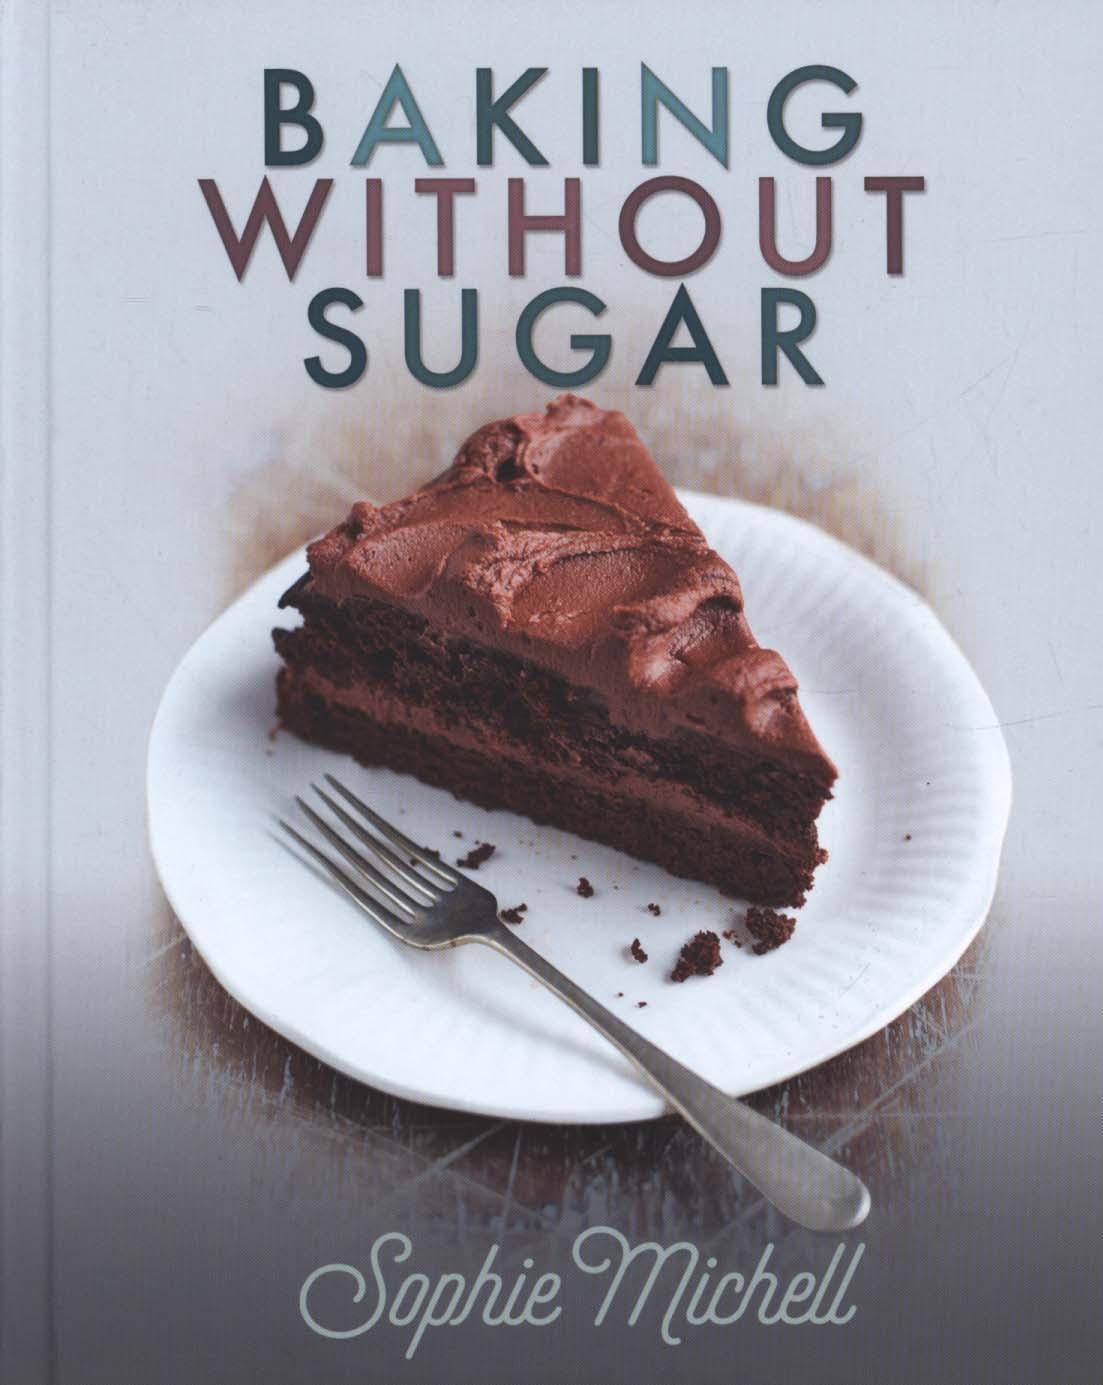 Baking without Sugar